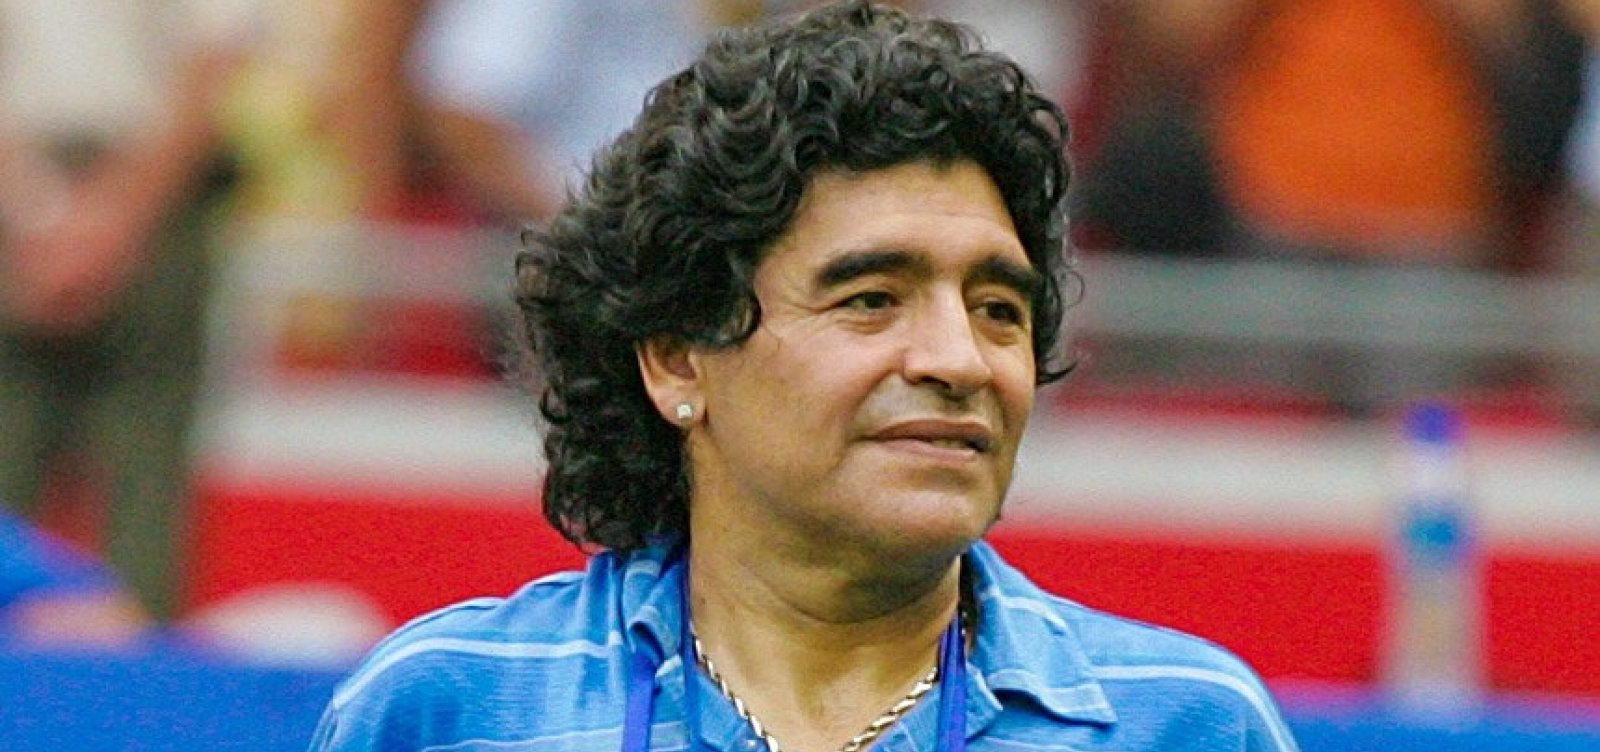 Autópsia aponta que Maradona sofreu infarto enquanto dormia, diz jornal argentino